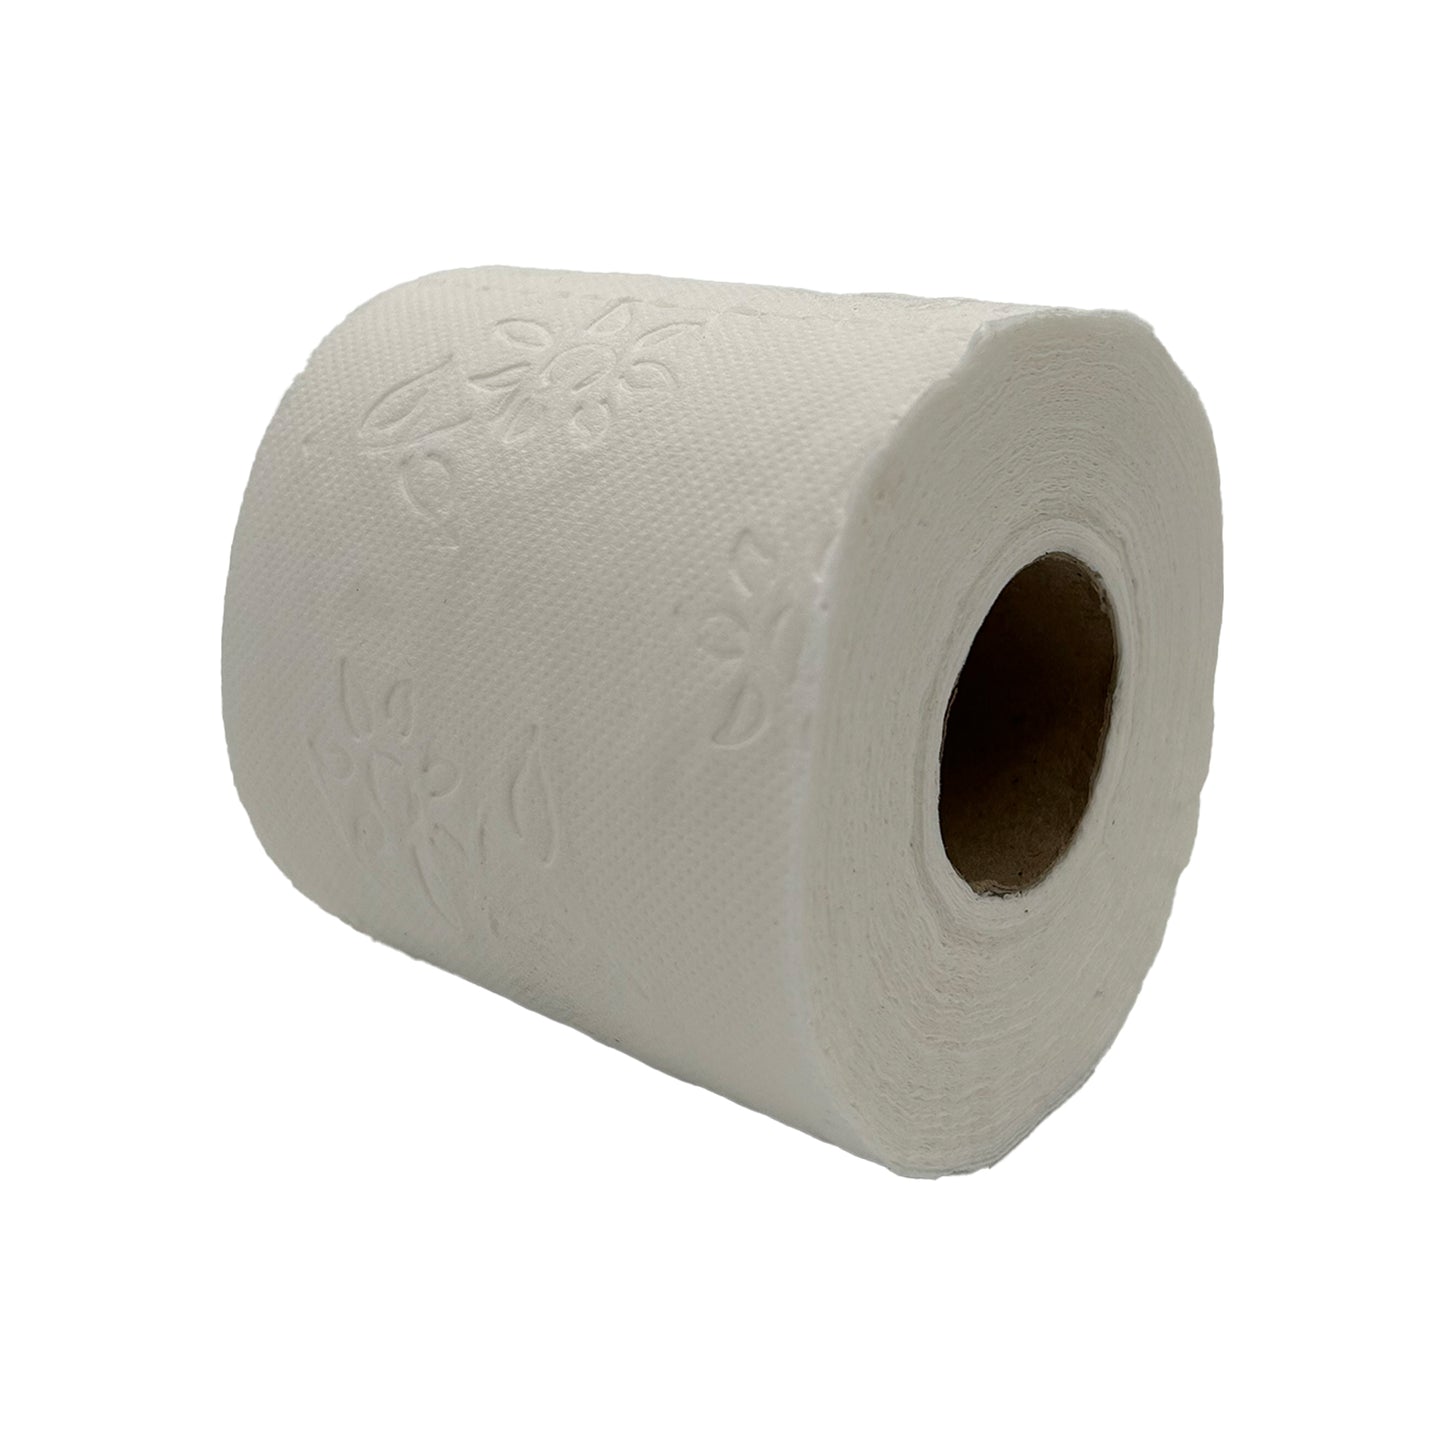 WC Papier Toiletten Papier 3-Lagig 150 Blatt Hygiene 64 Rollen.